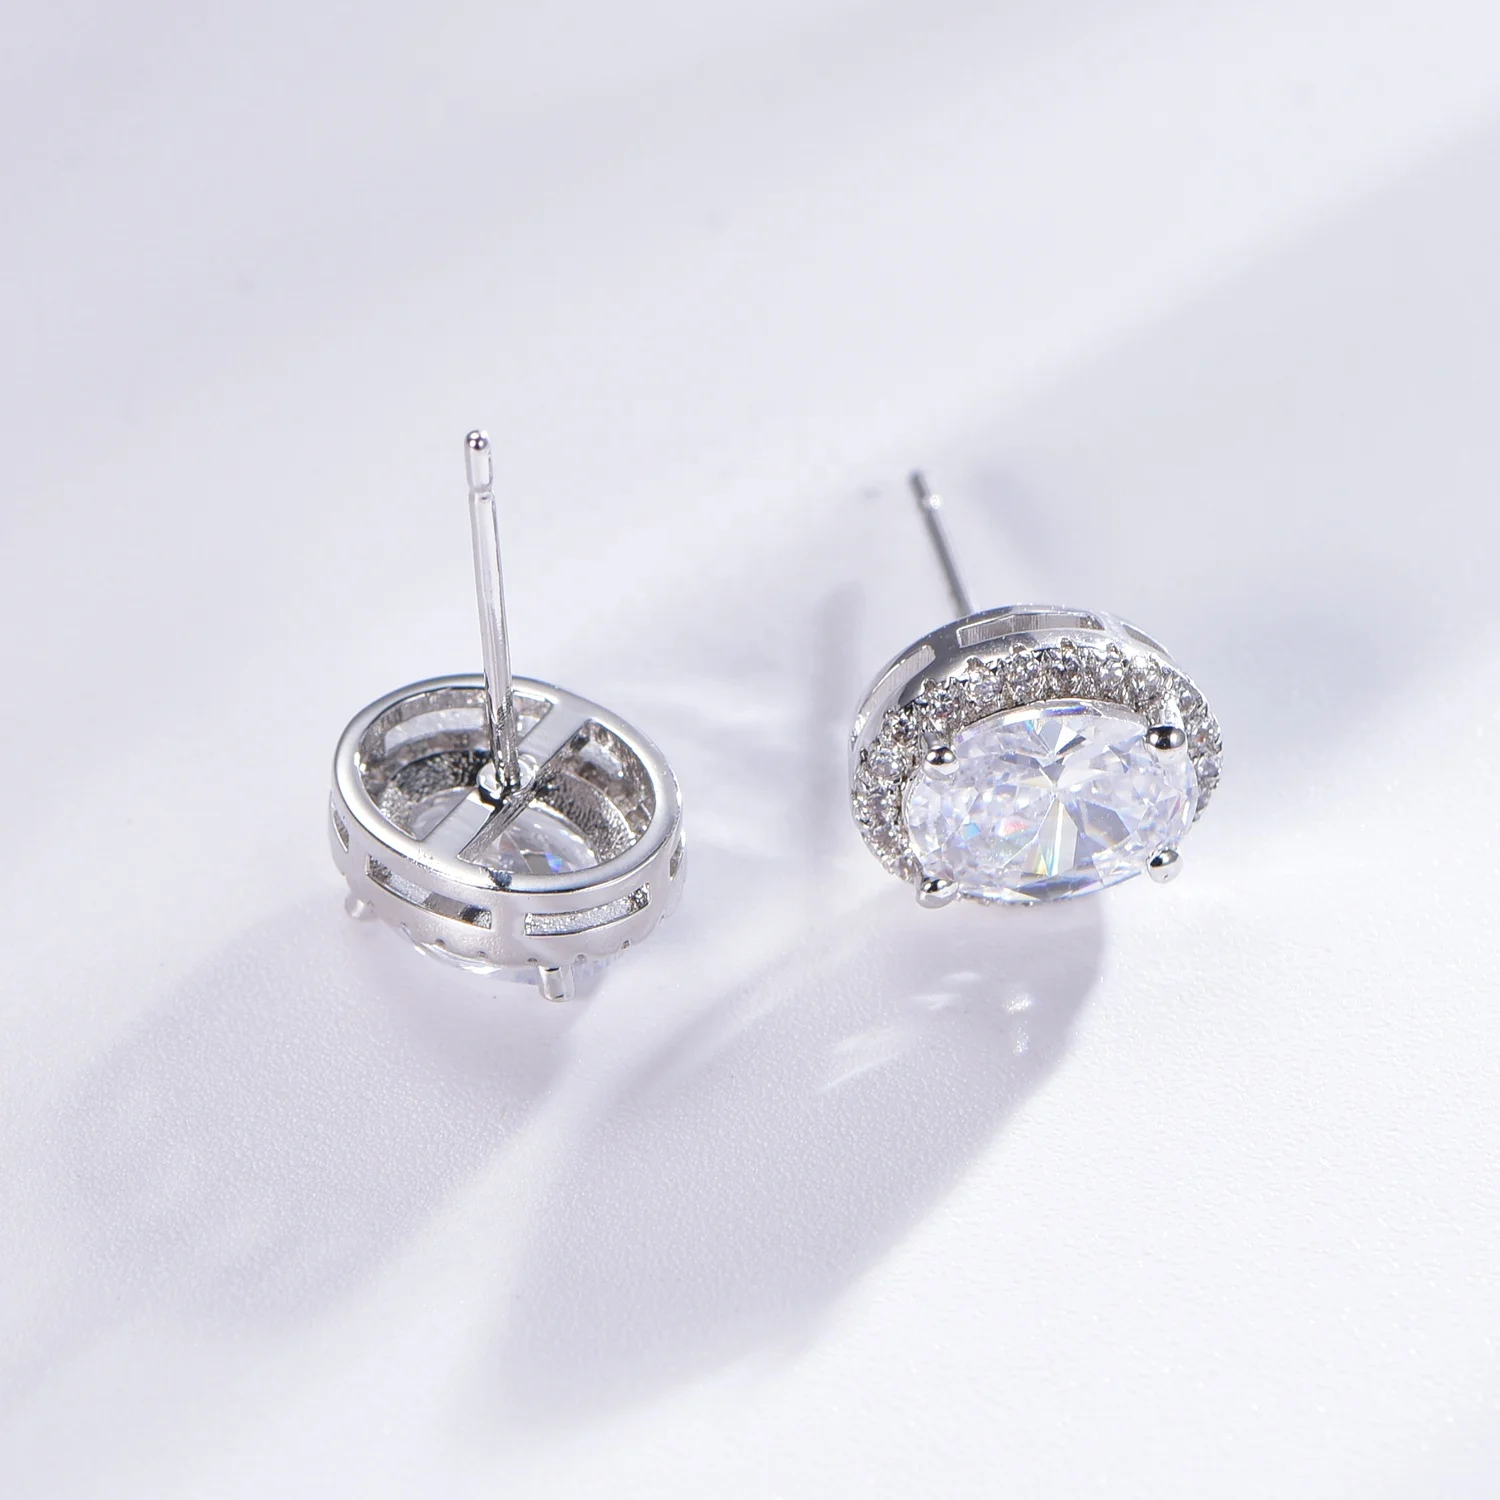 Sterling silver earrings 925 Stud Ear rings Hypoallergenic Cubic Zirconia CZ Earrings 3-8mm Stud Earrings